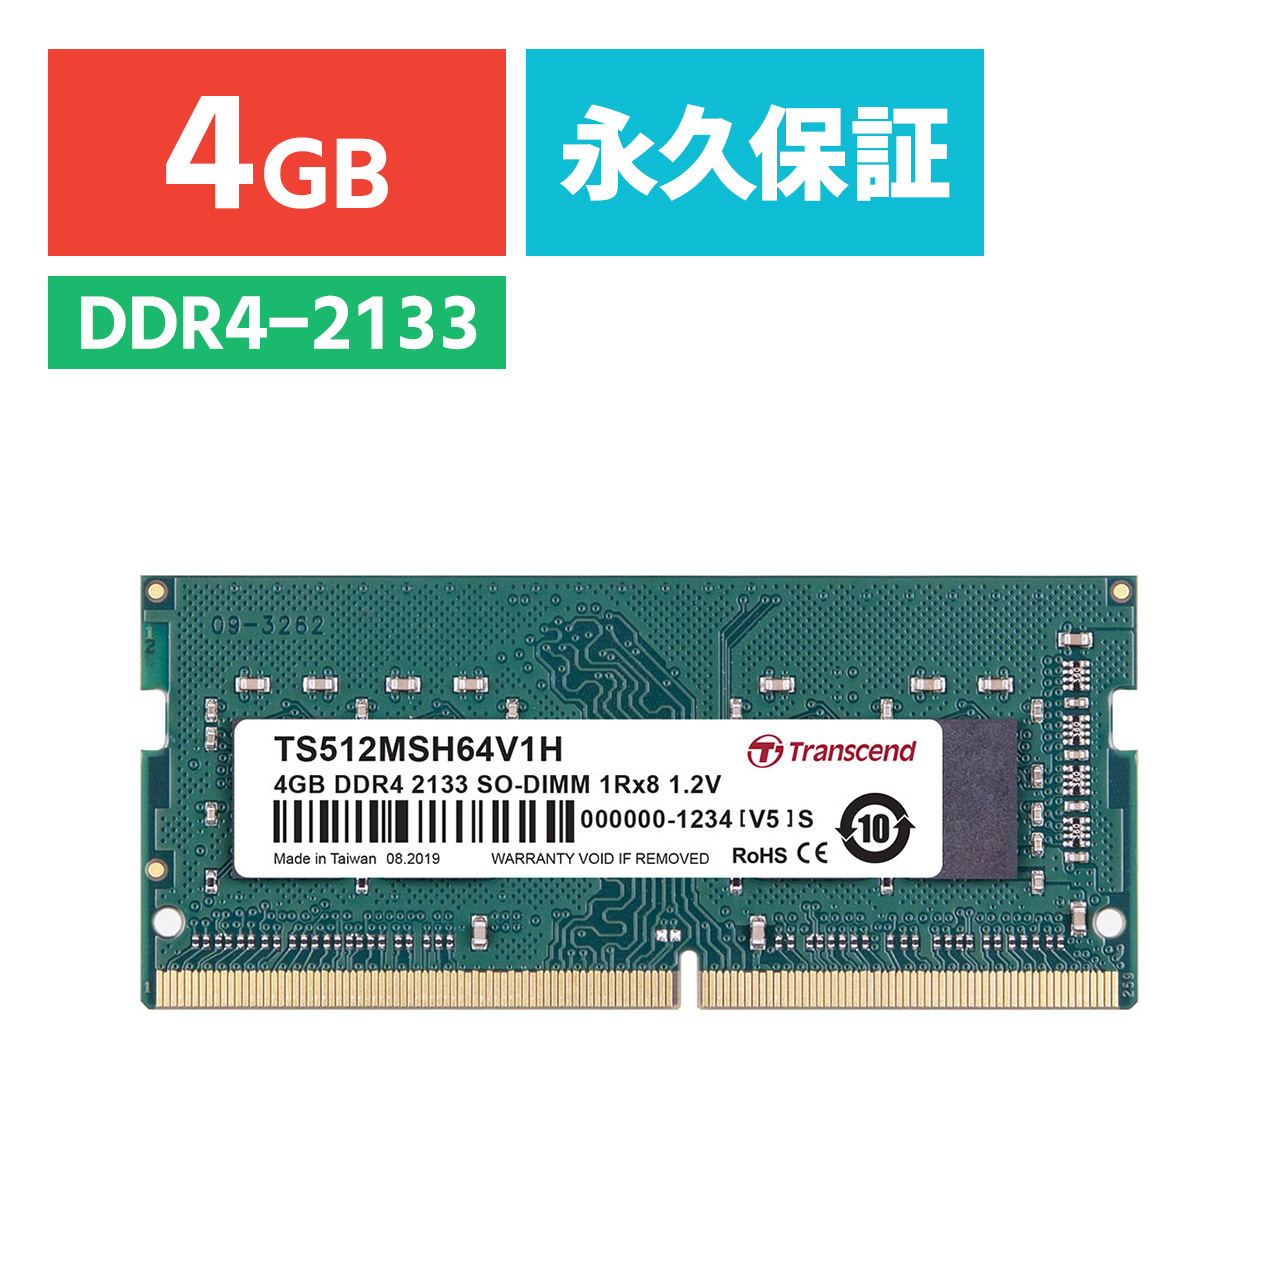 Transcend m[gPCp 4GB DDR4-2133 PC4-17000 SO-DIMM TS512MSH64V1H TS512MSH64V1H